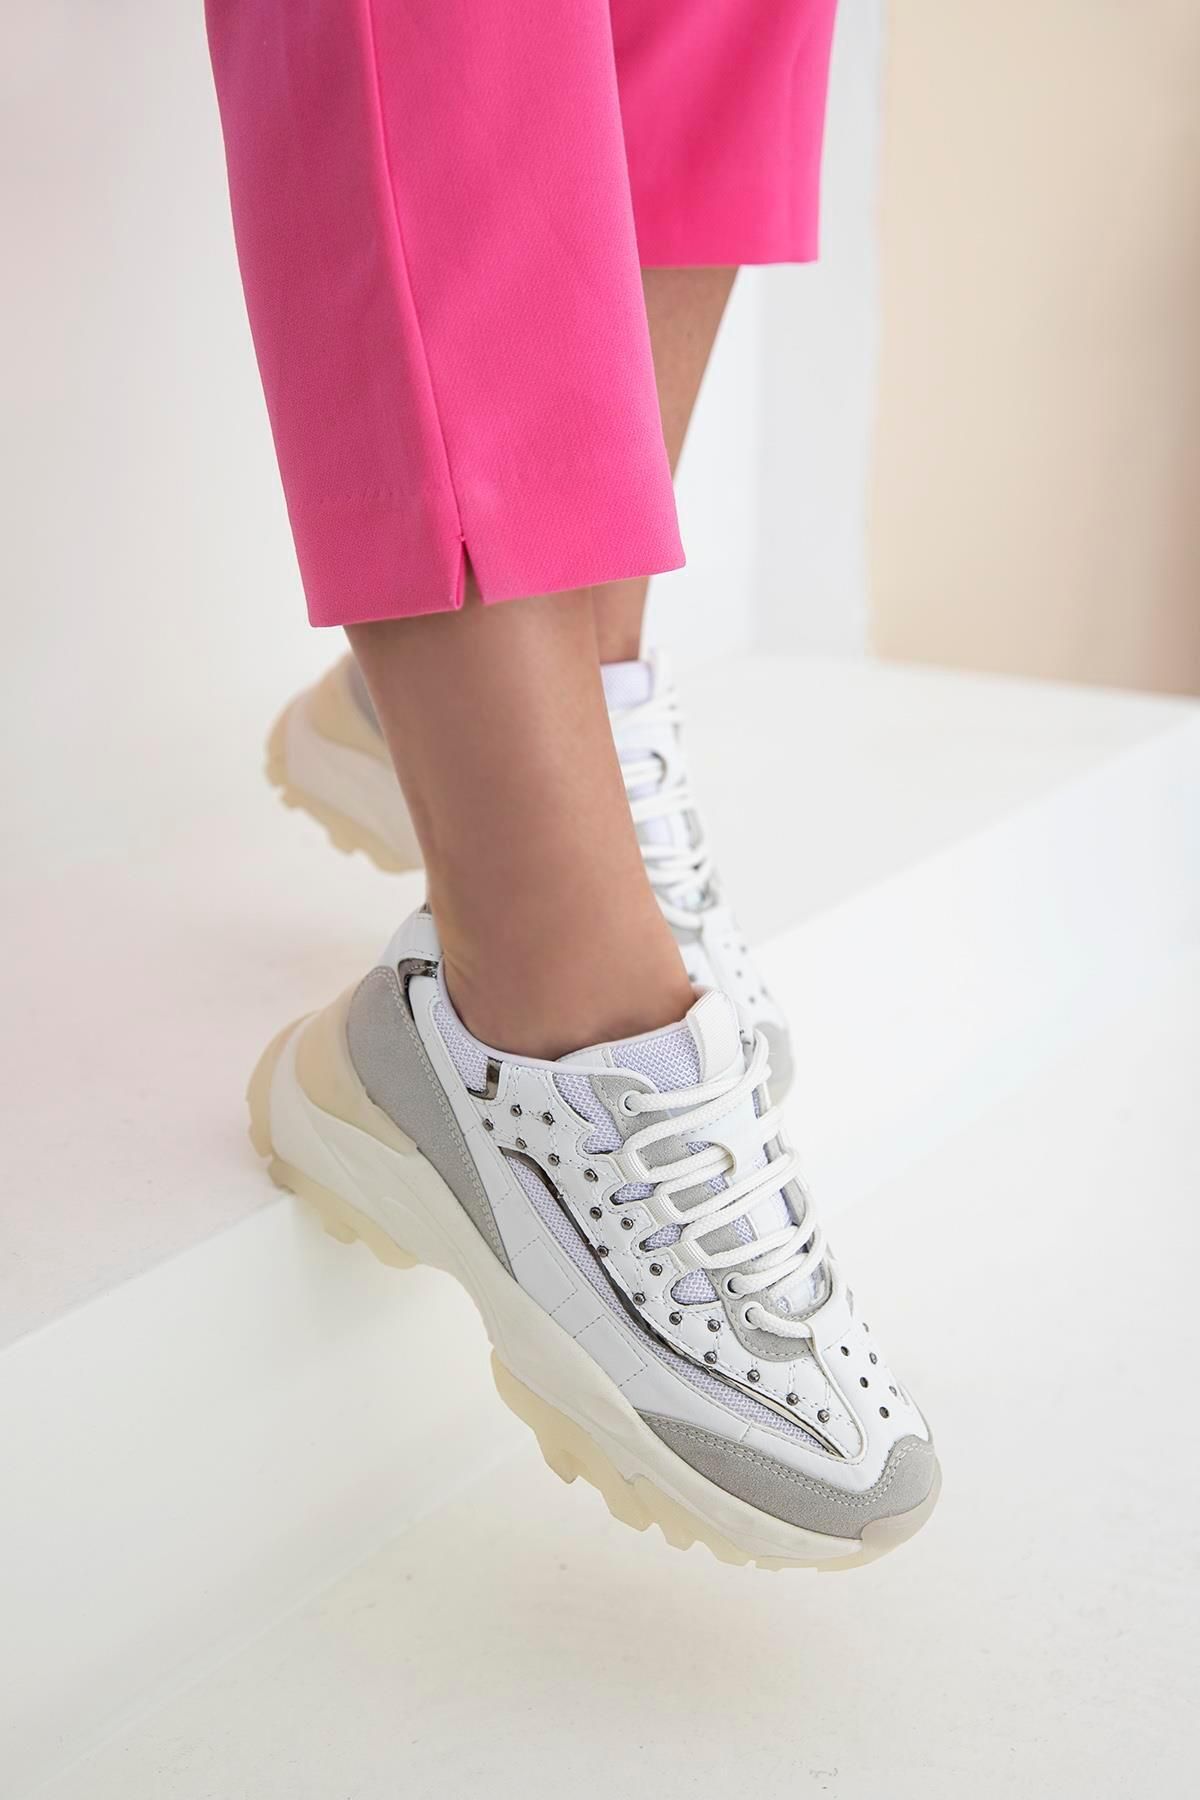 Straswans Haden Kadın Trok Detay Spor Ayakkabı Beyaz-platin